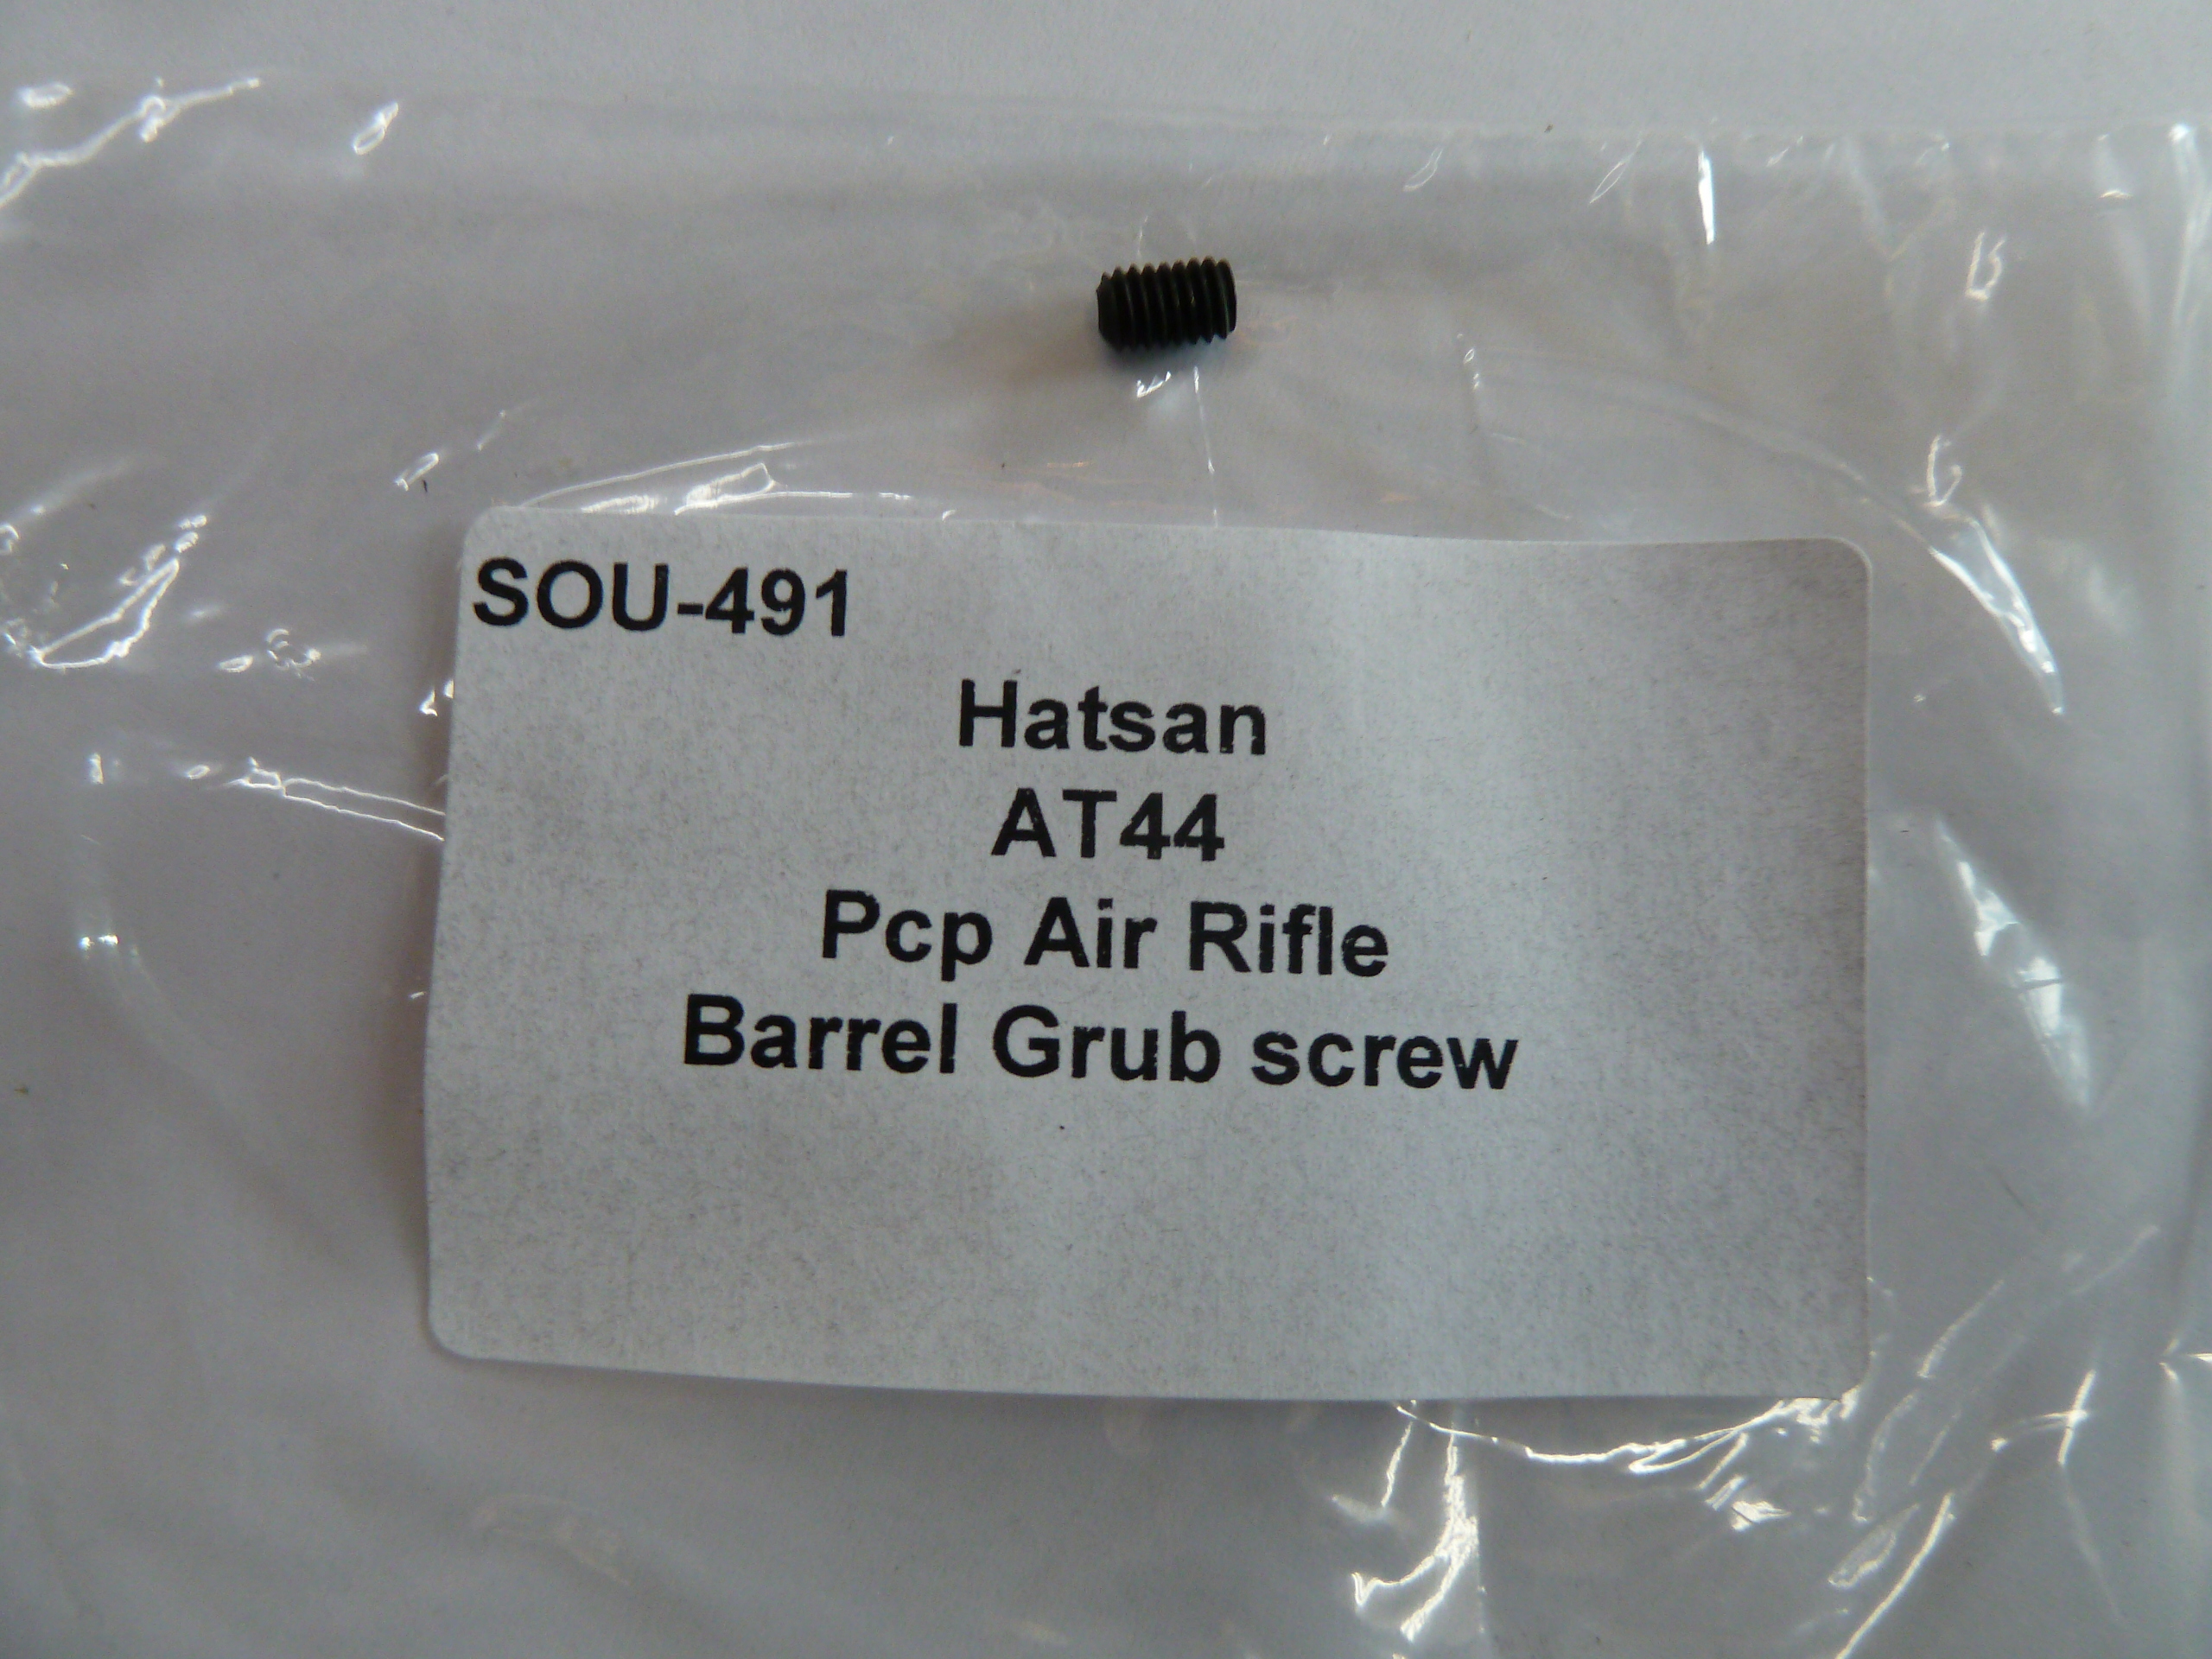 Hatsan AT44 barrel grub screw